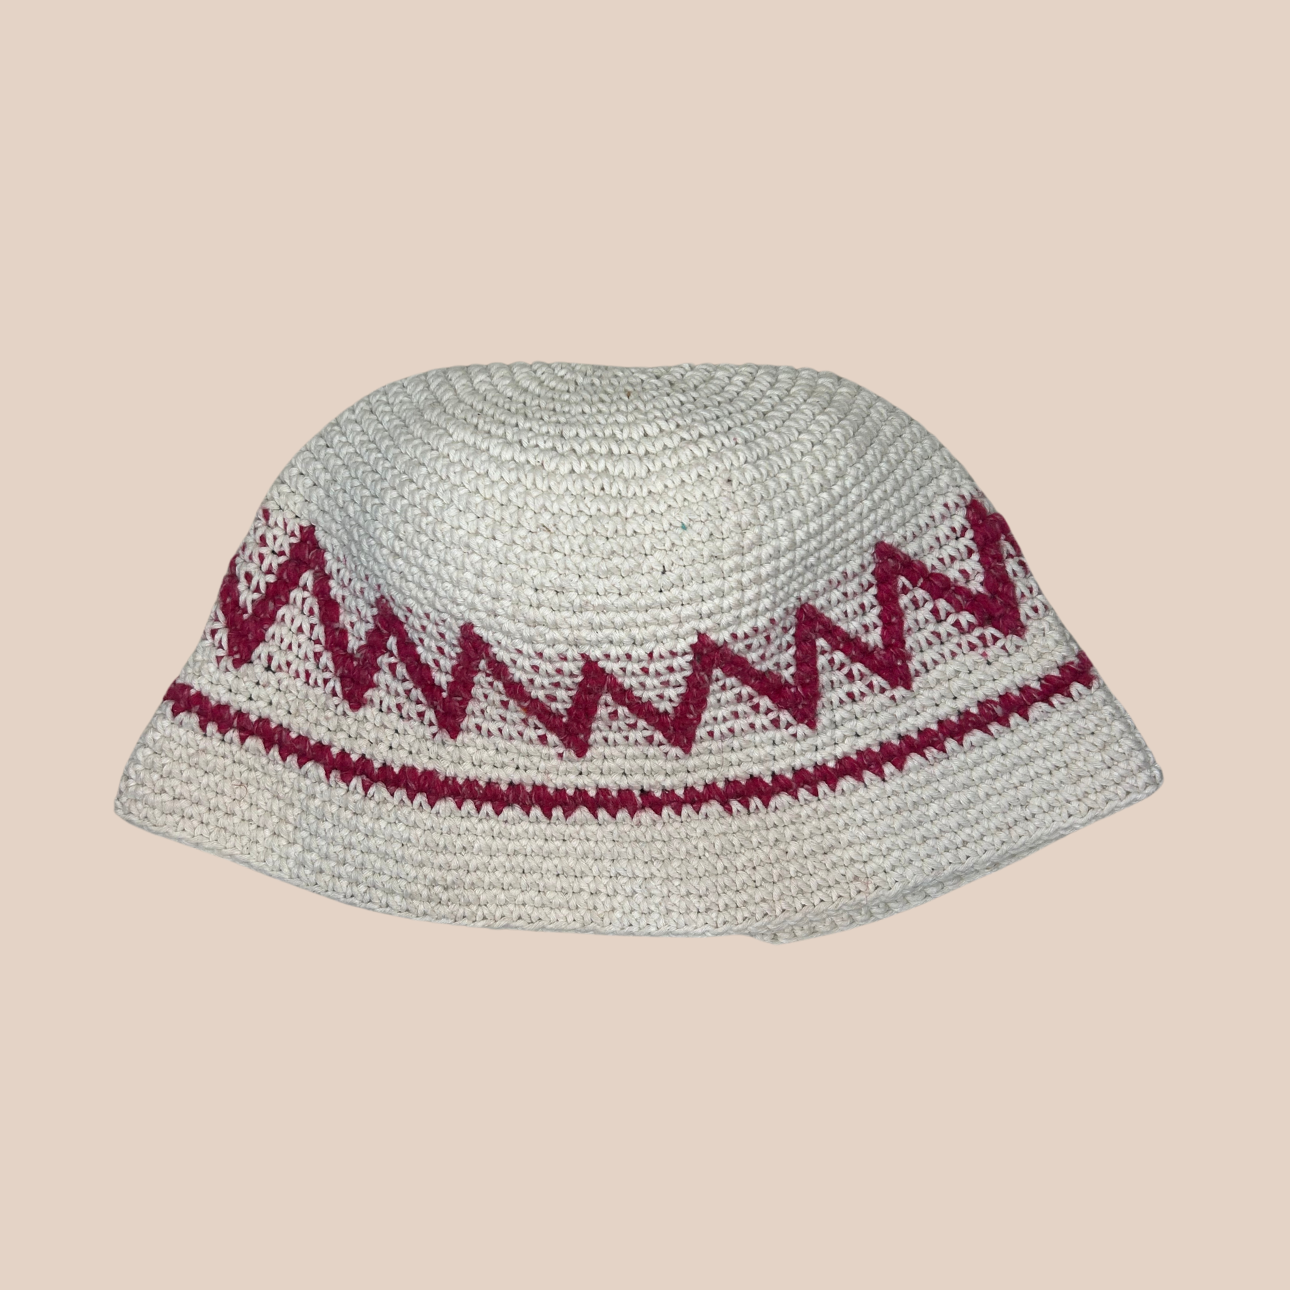 Un bucket hat crocheté en laine et acrylique, blanc et rose